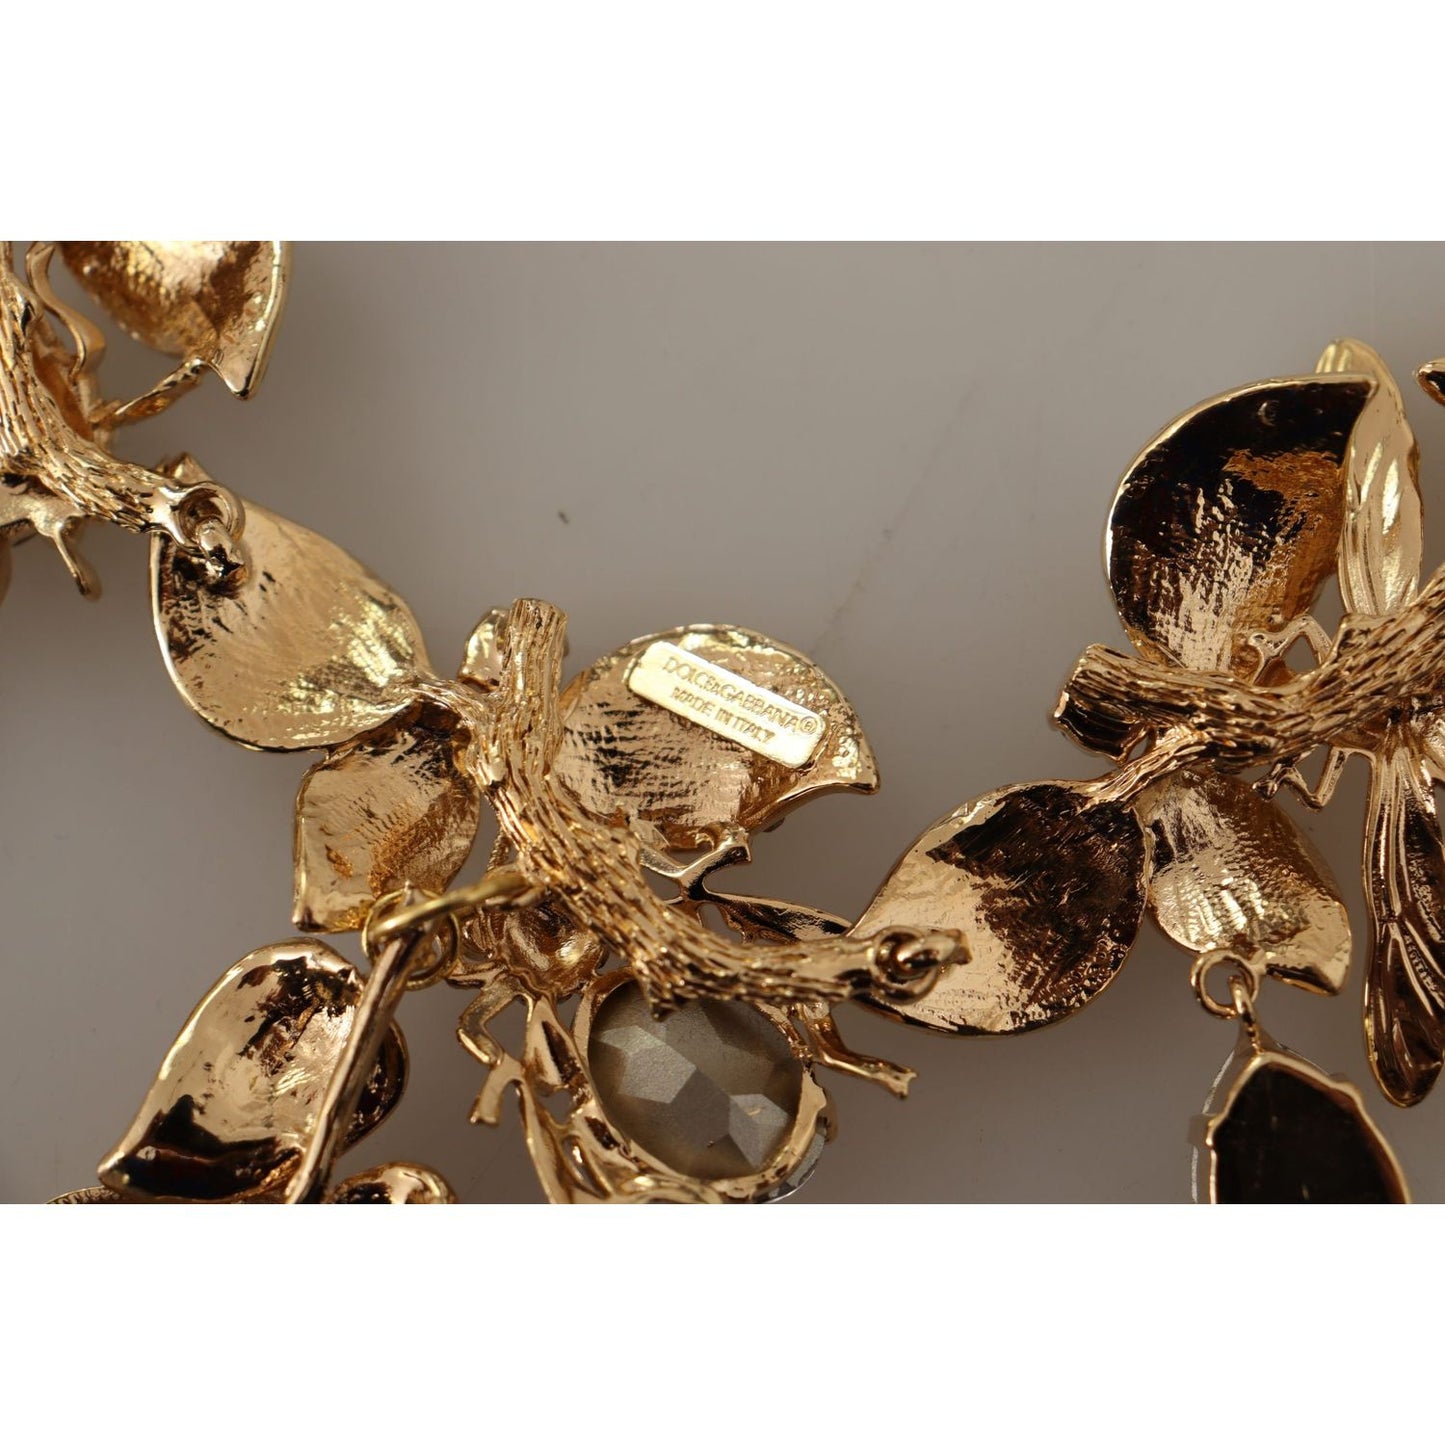 Dolce & Gabbana Elegant Sicily Floral Bug Statement Necklace gold-brass-floral-sicily-crystal-statement-necklace WOMAN NECKLACE IMG_1867-scaled-1e395236-a05.jpg